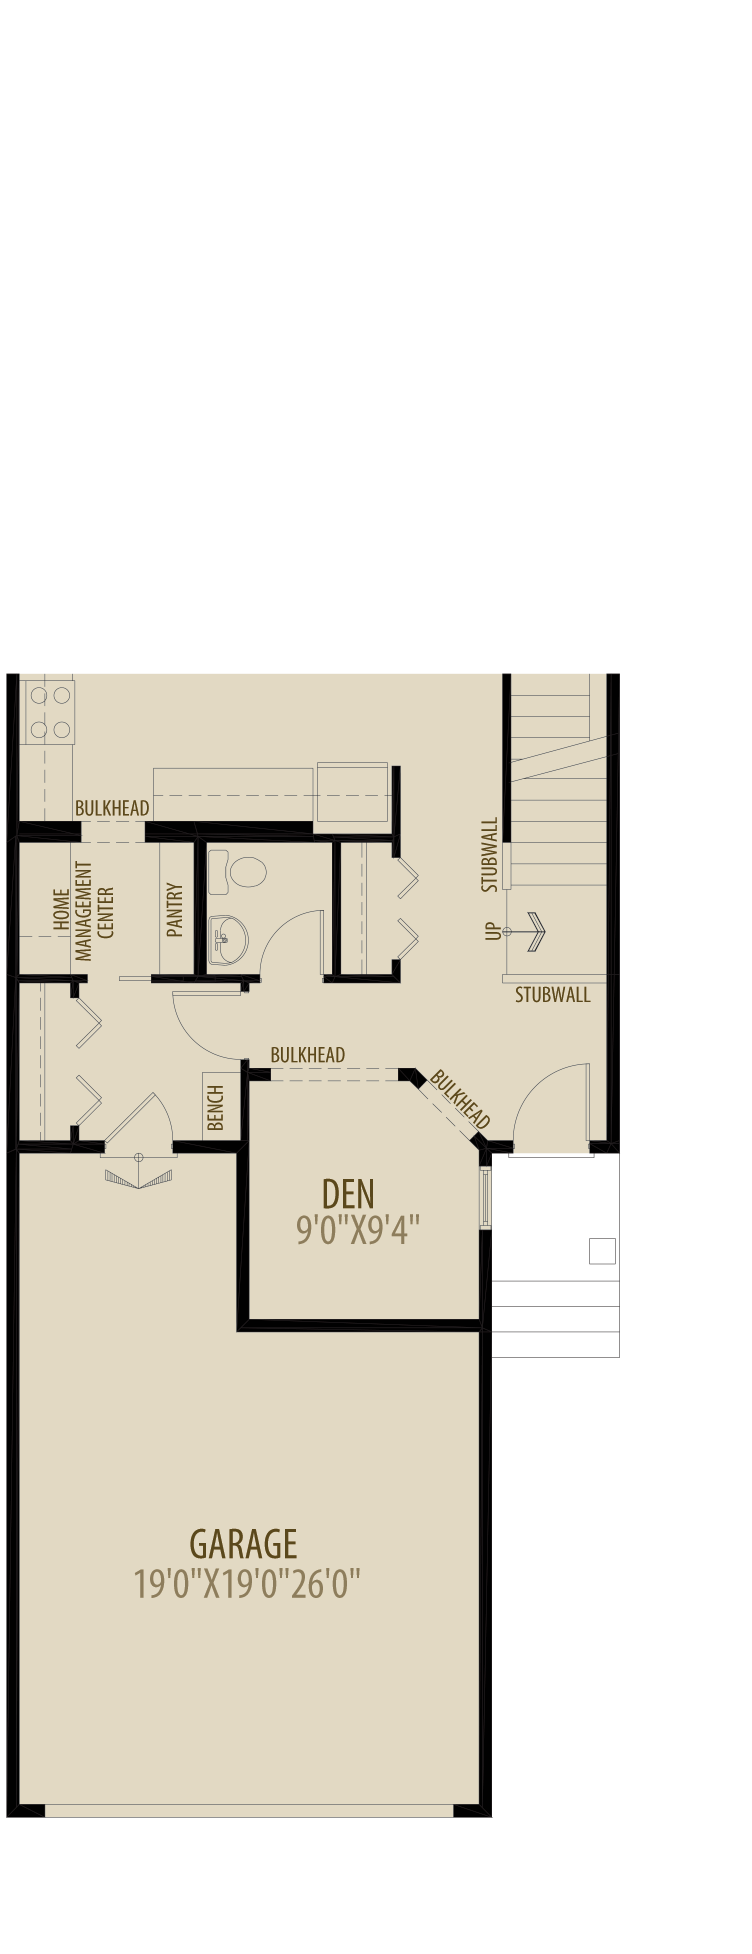 Option 3 Main Floor Den Adds 70 sq ft